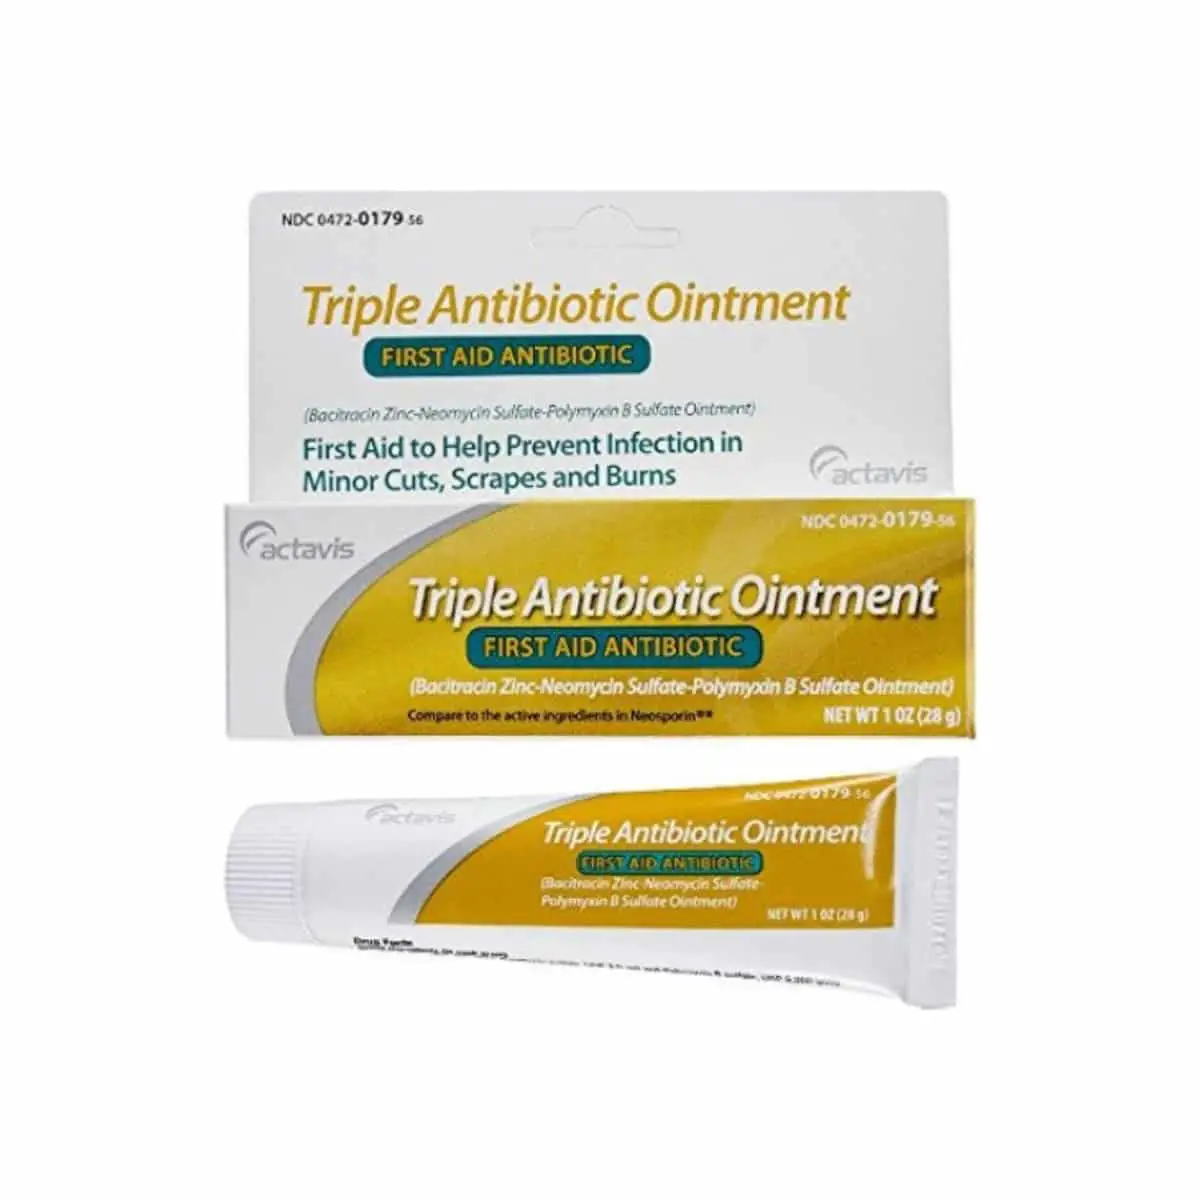 Actavis First Aid Triple Antibiotic Ointment Cream, 1 oz Pharmapacks